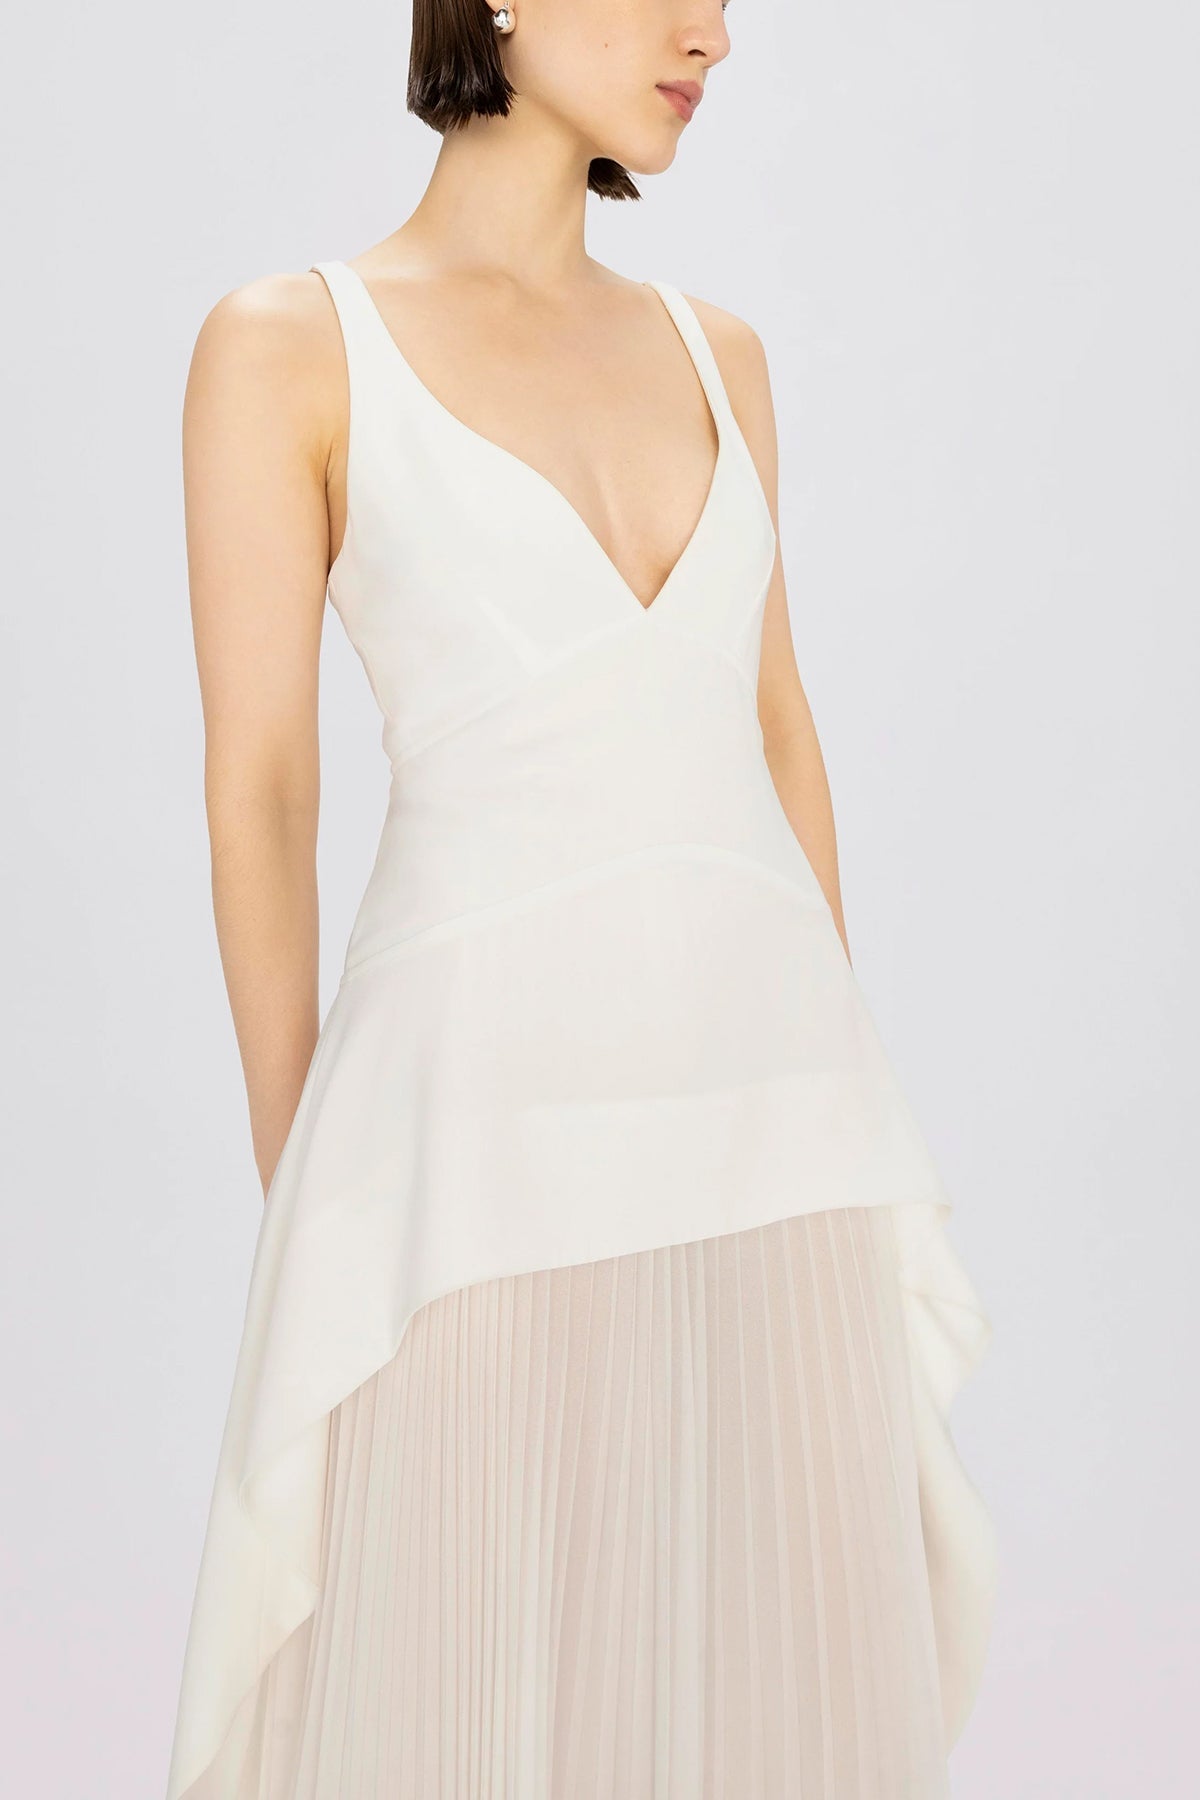 Sequoia Sleeveless V-Neck Midi Dress in White - shop-olivia.com